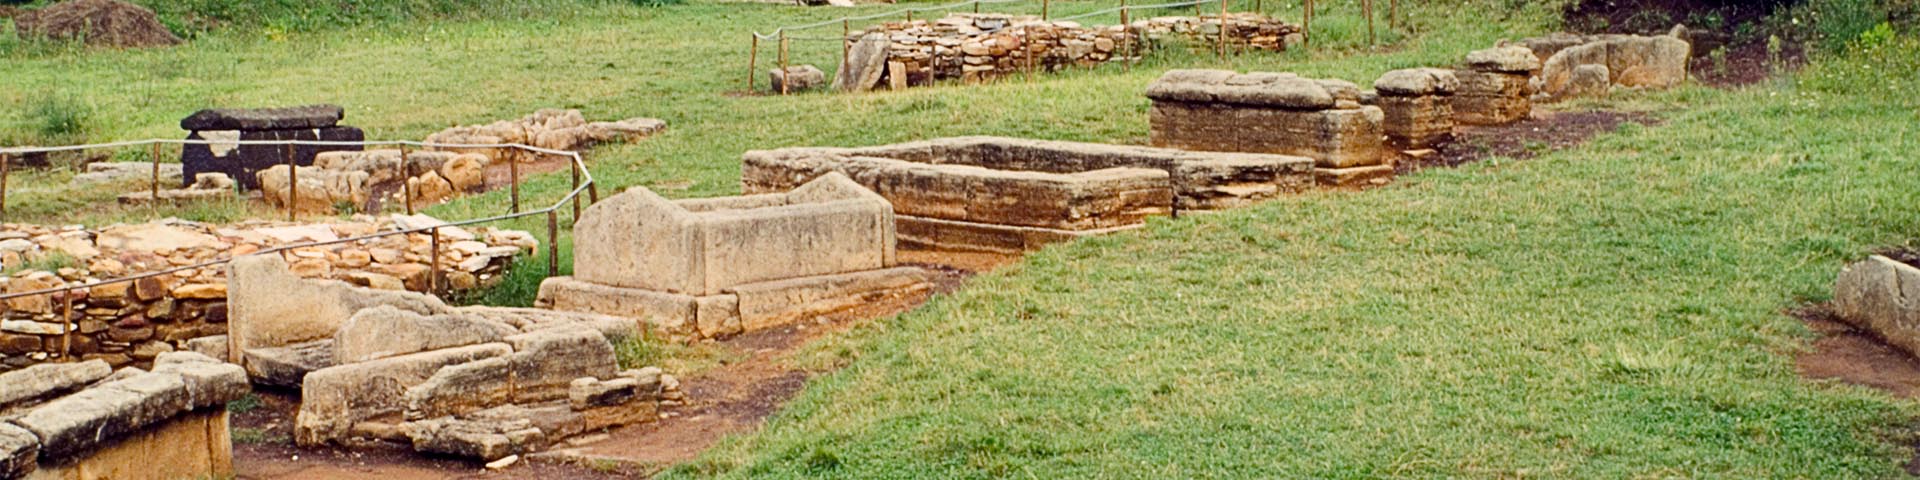 Necropolis of Populonia